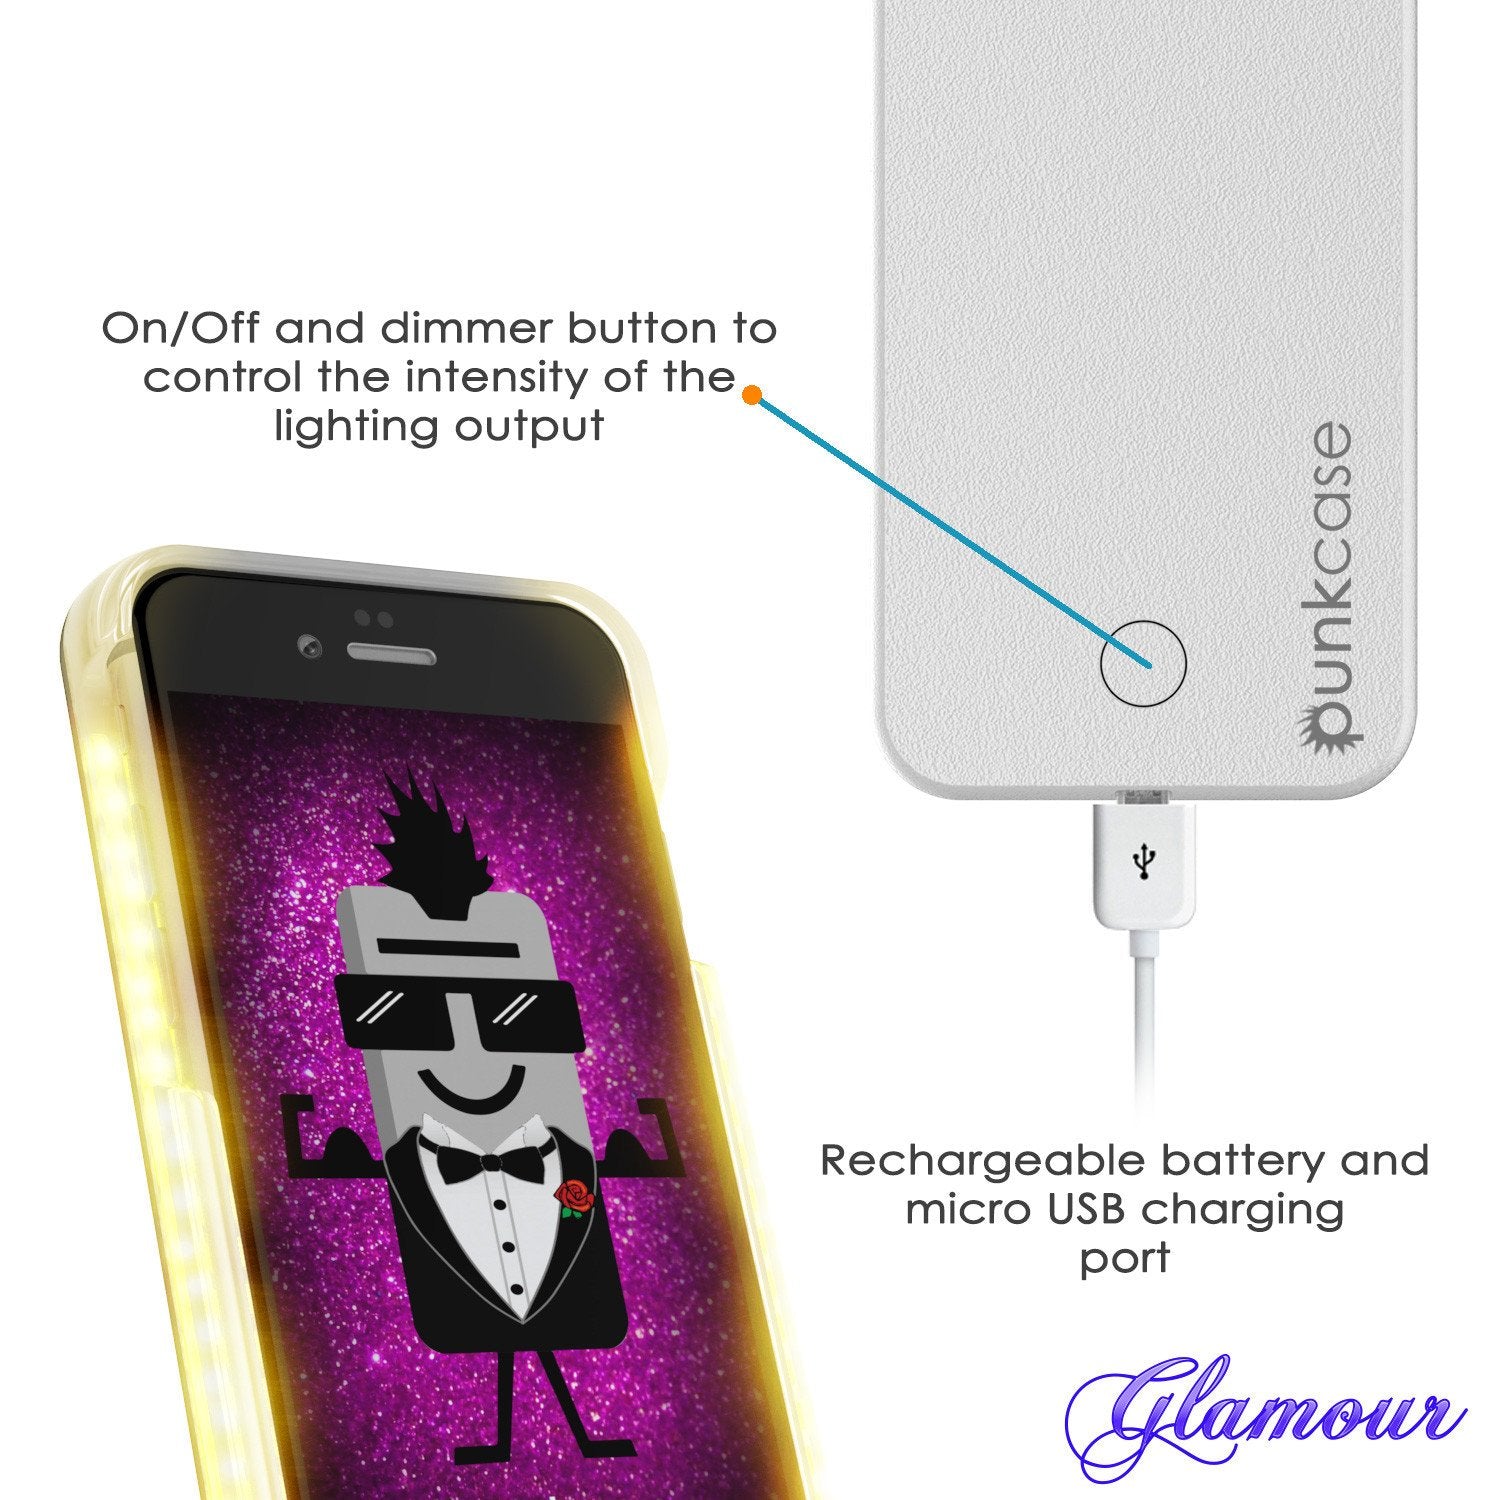 iPhone 6/6S Punkcase LED Light Case Light Illuminated Case, WHITE W/  Battery Power Bank